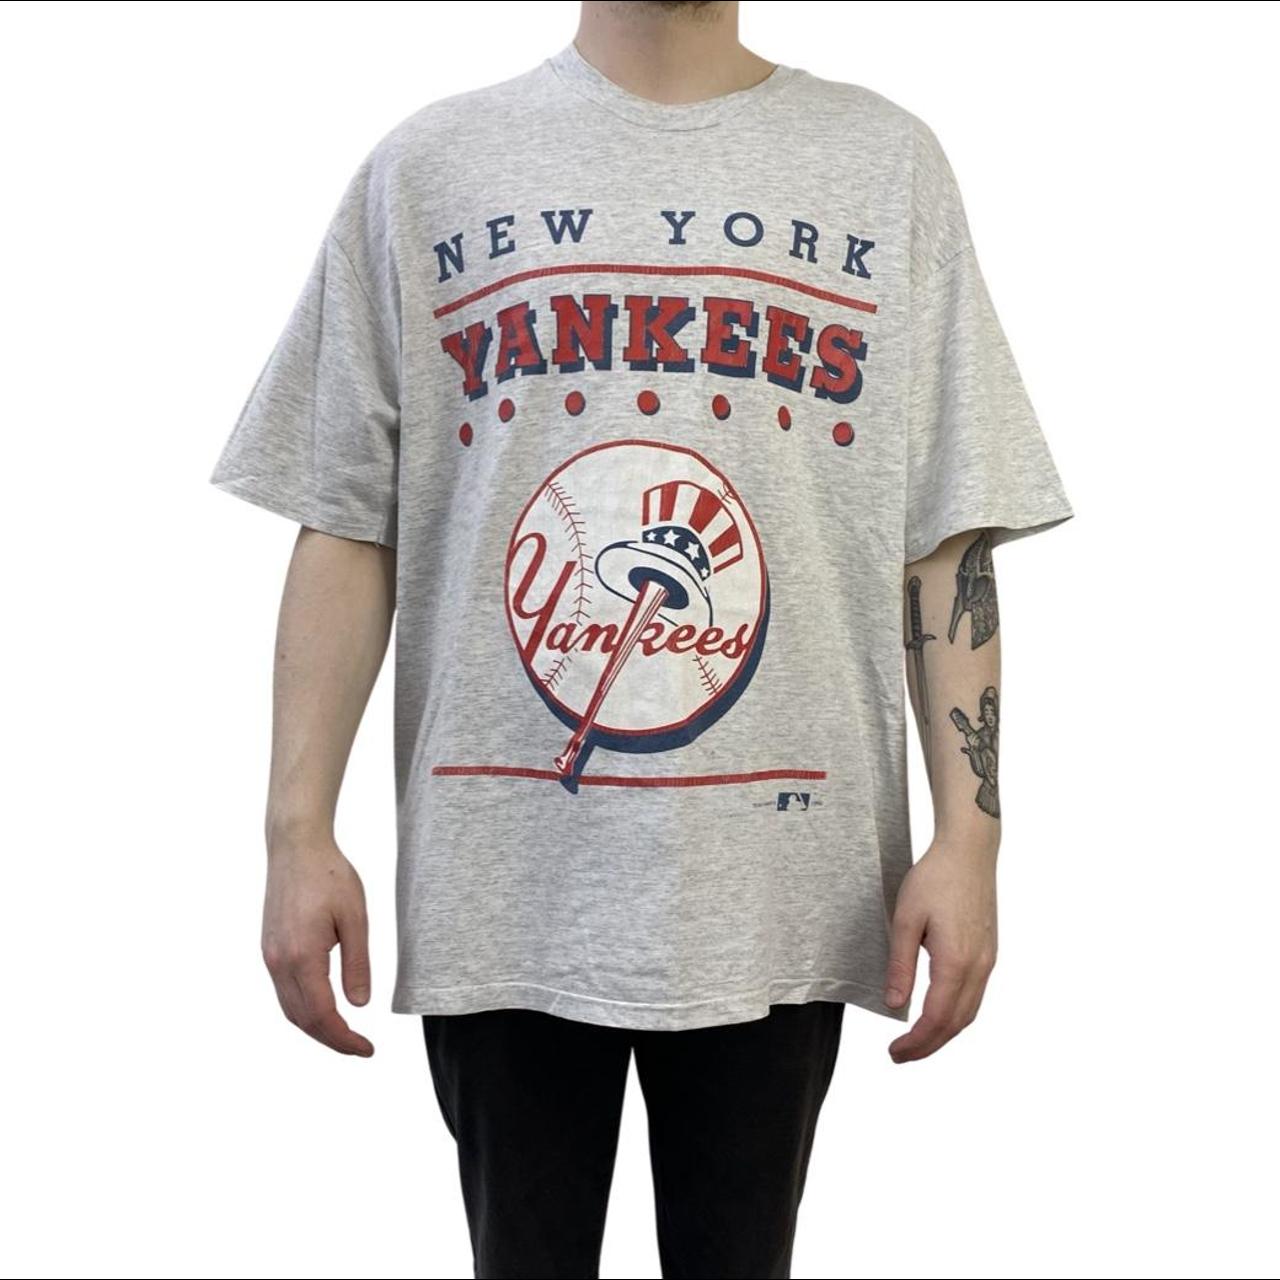 yankees, Shirts, Vintage Yankees Tee